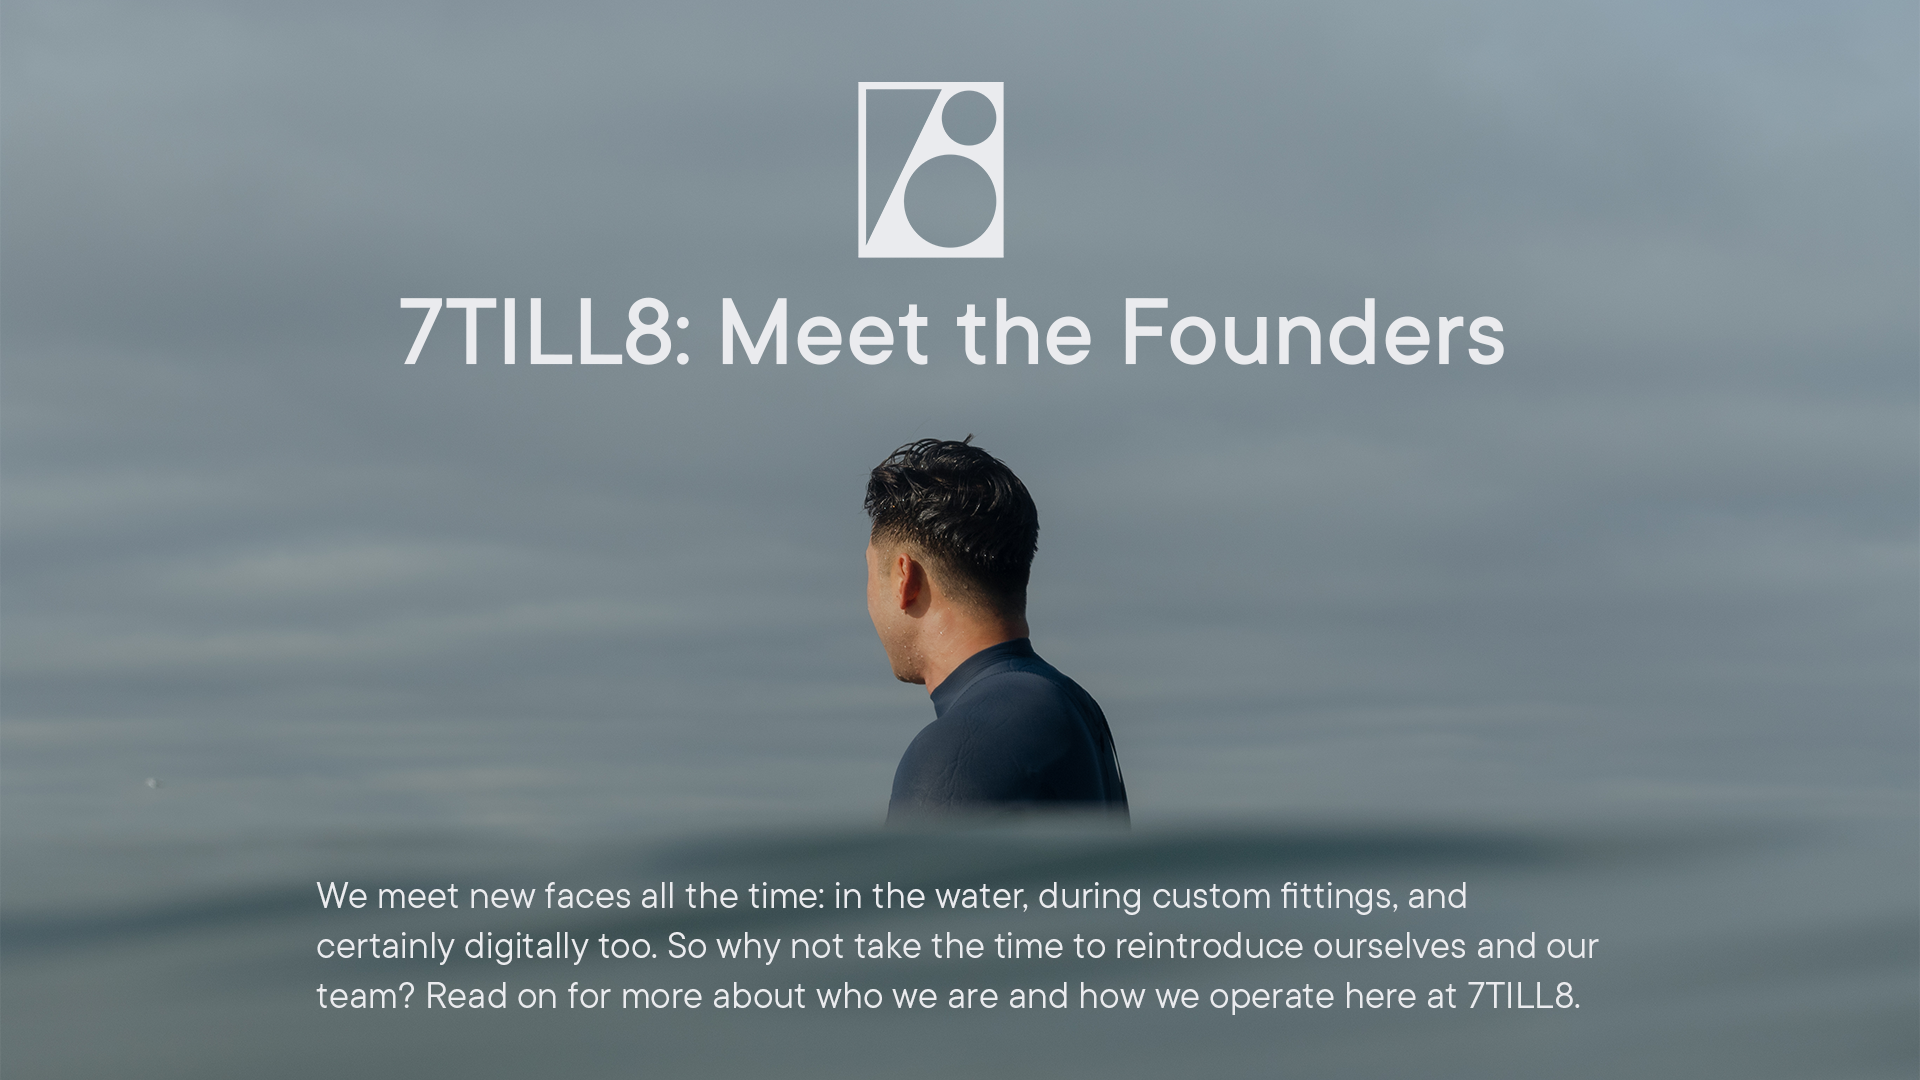 7TILL8: Meet the Founders